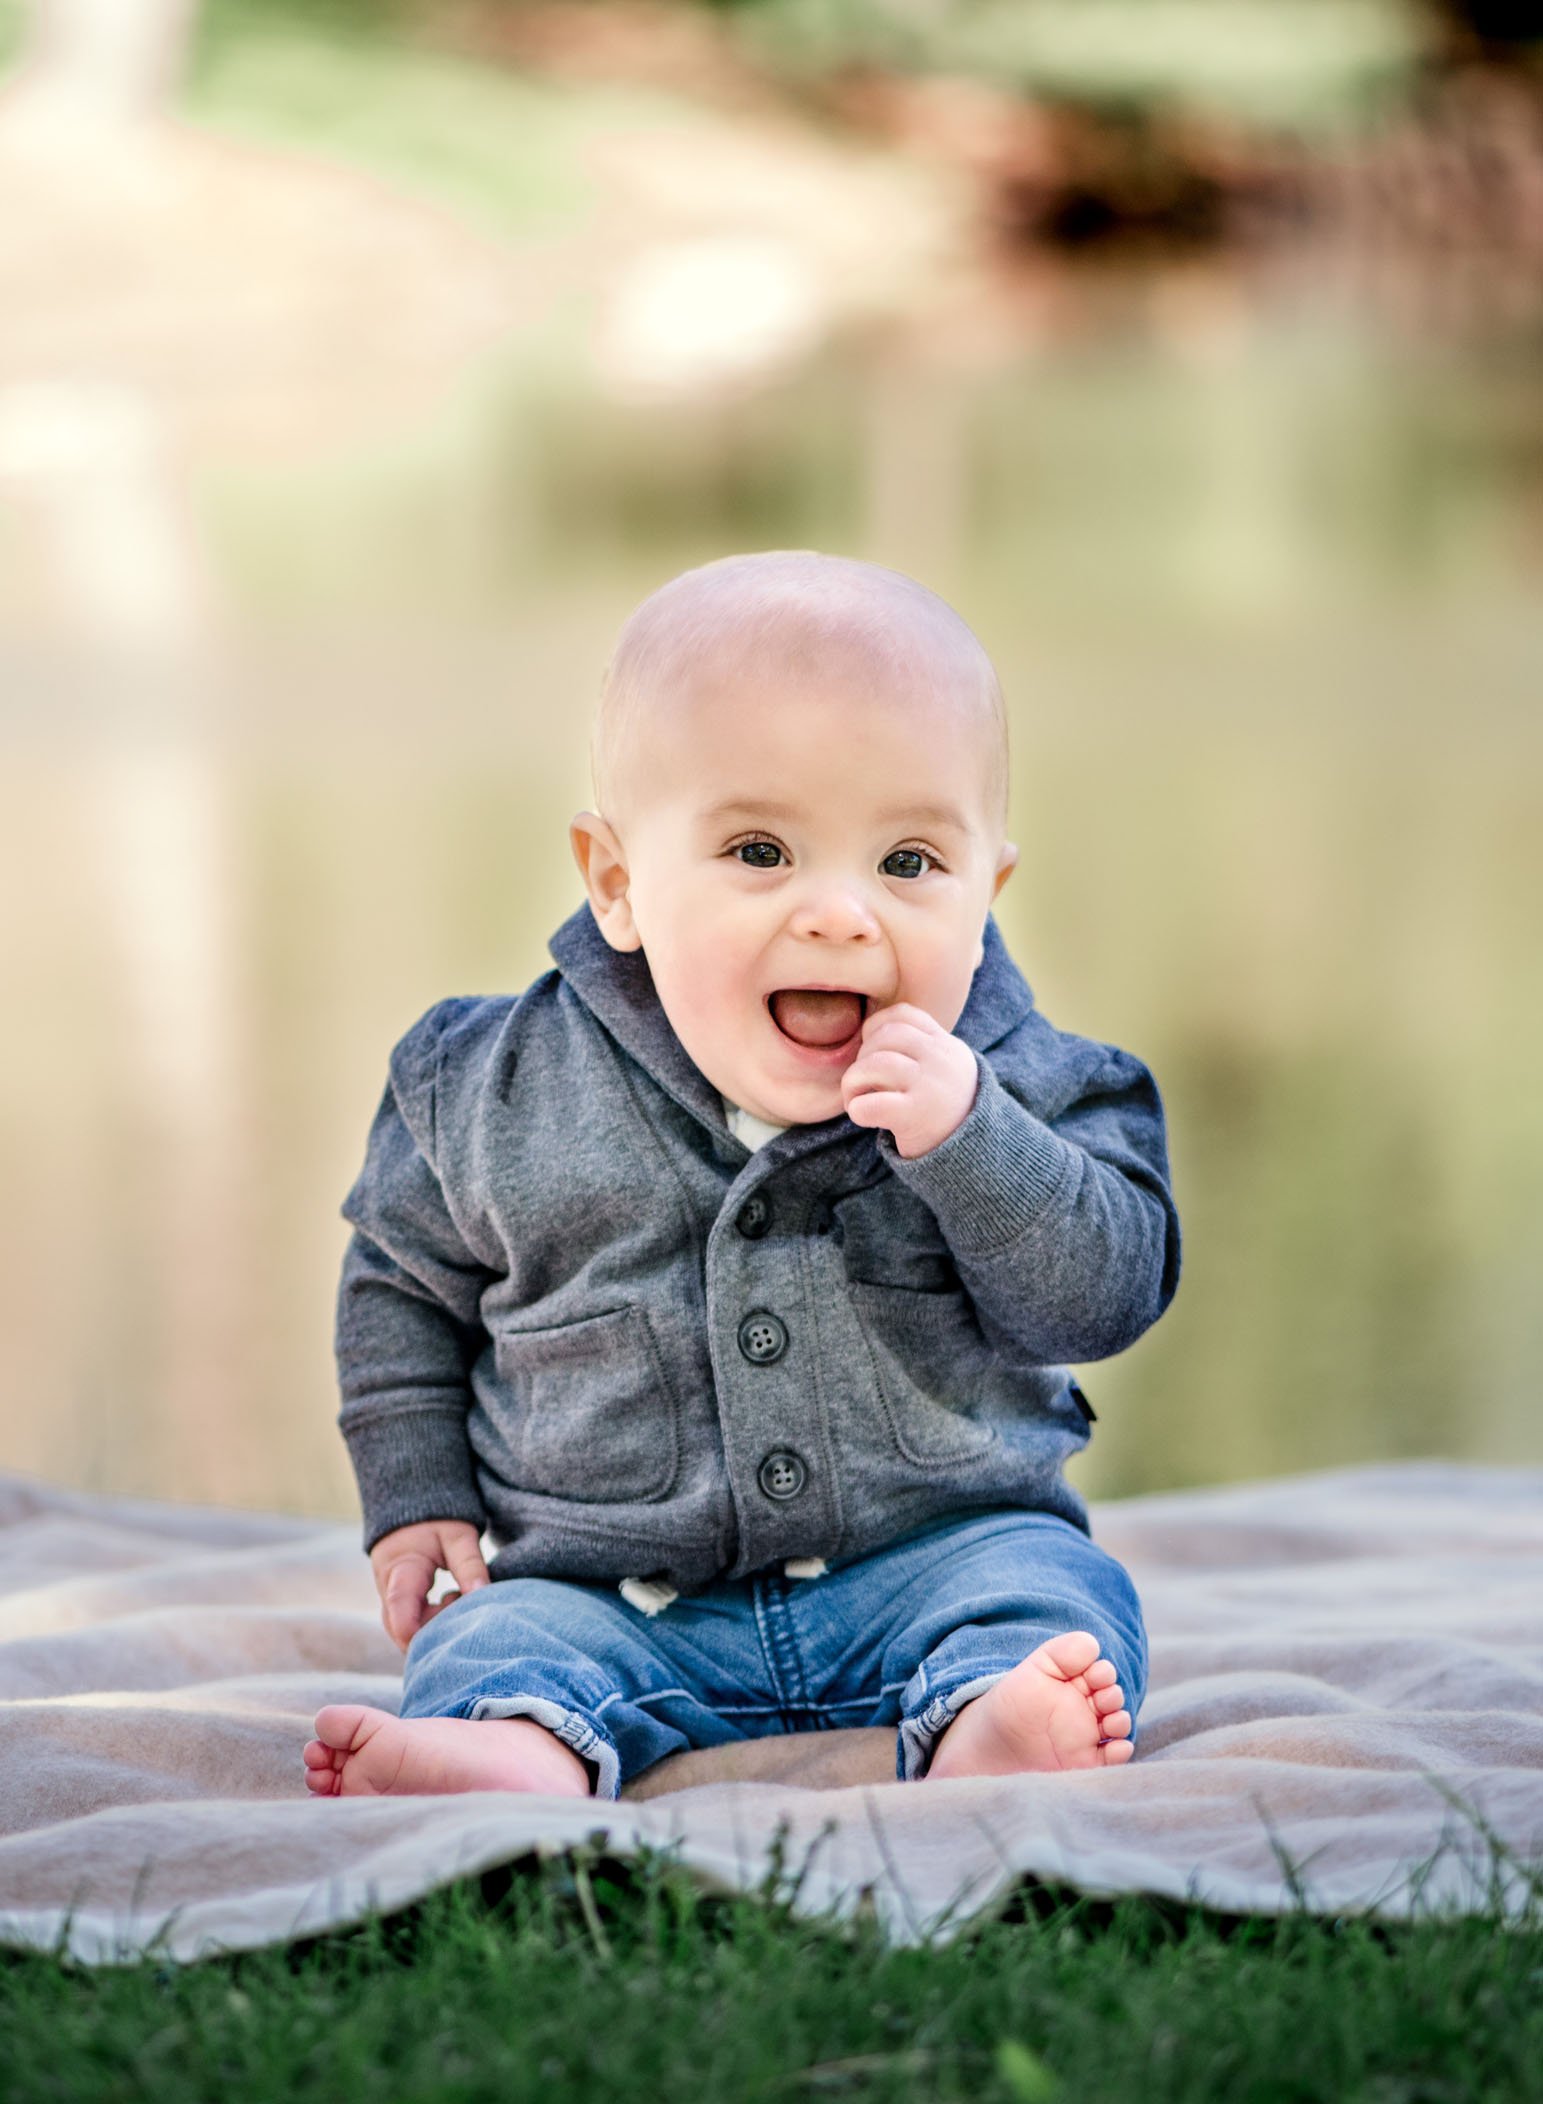 Baby Photographer Glastonbury CT | One Big Happy Photo